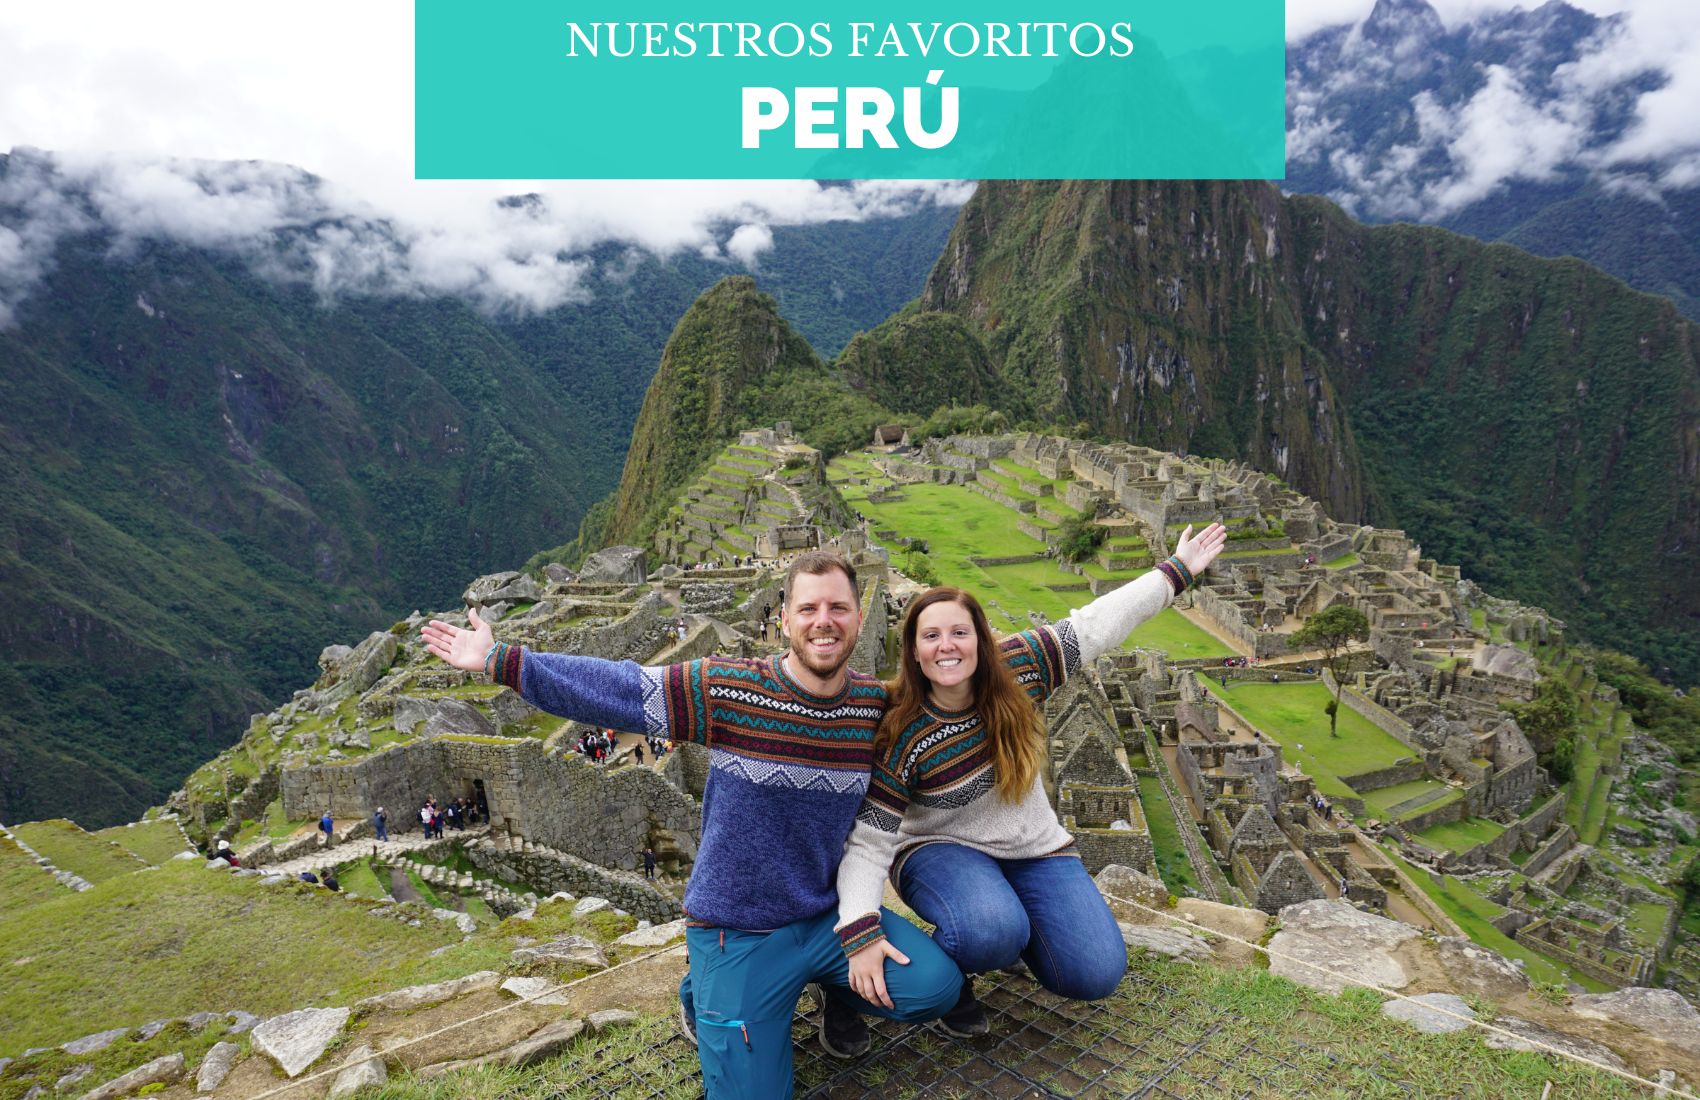 Portada-Peru-Nuestros-Favoritos